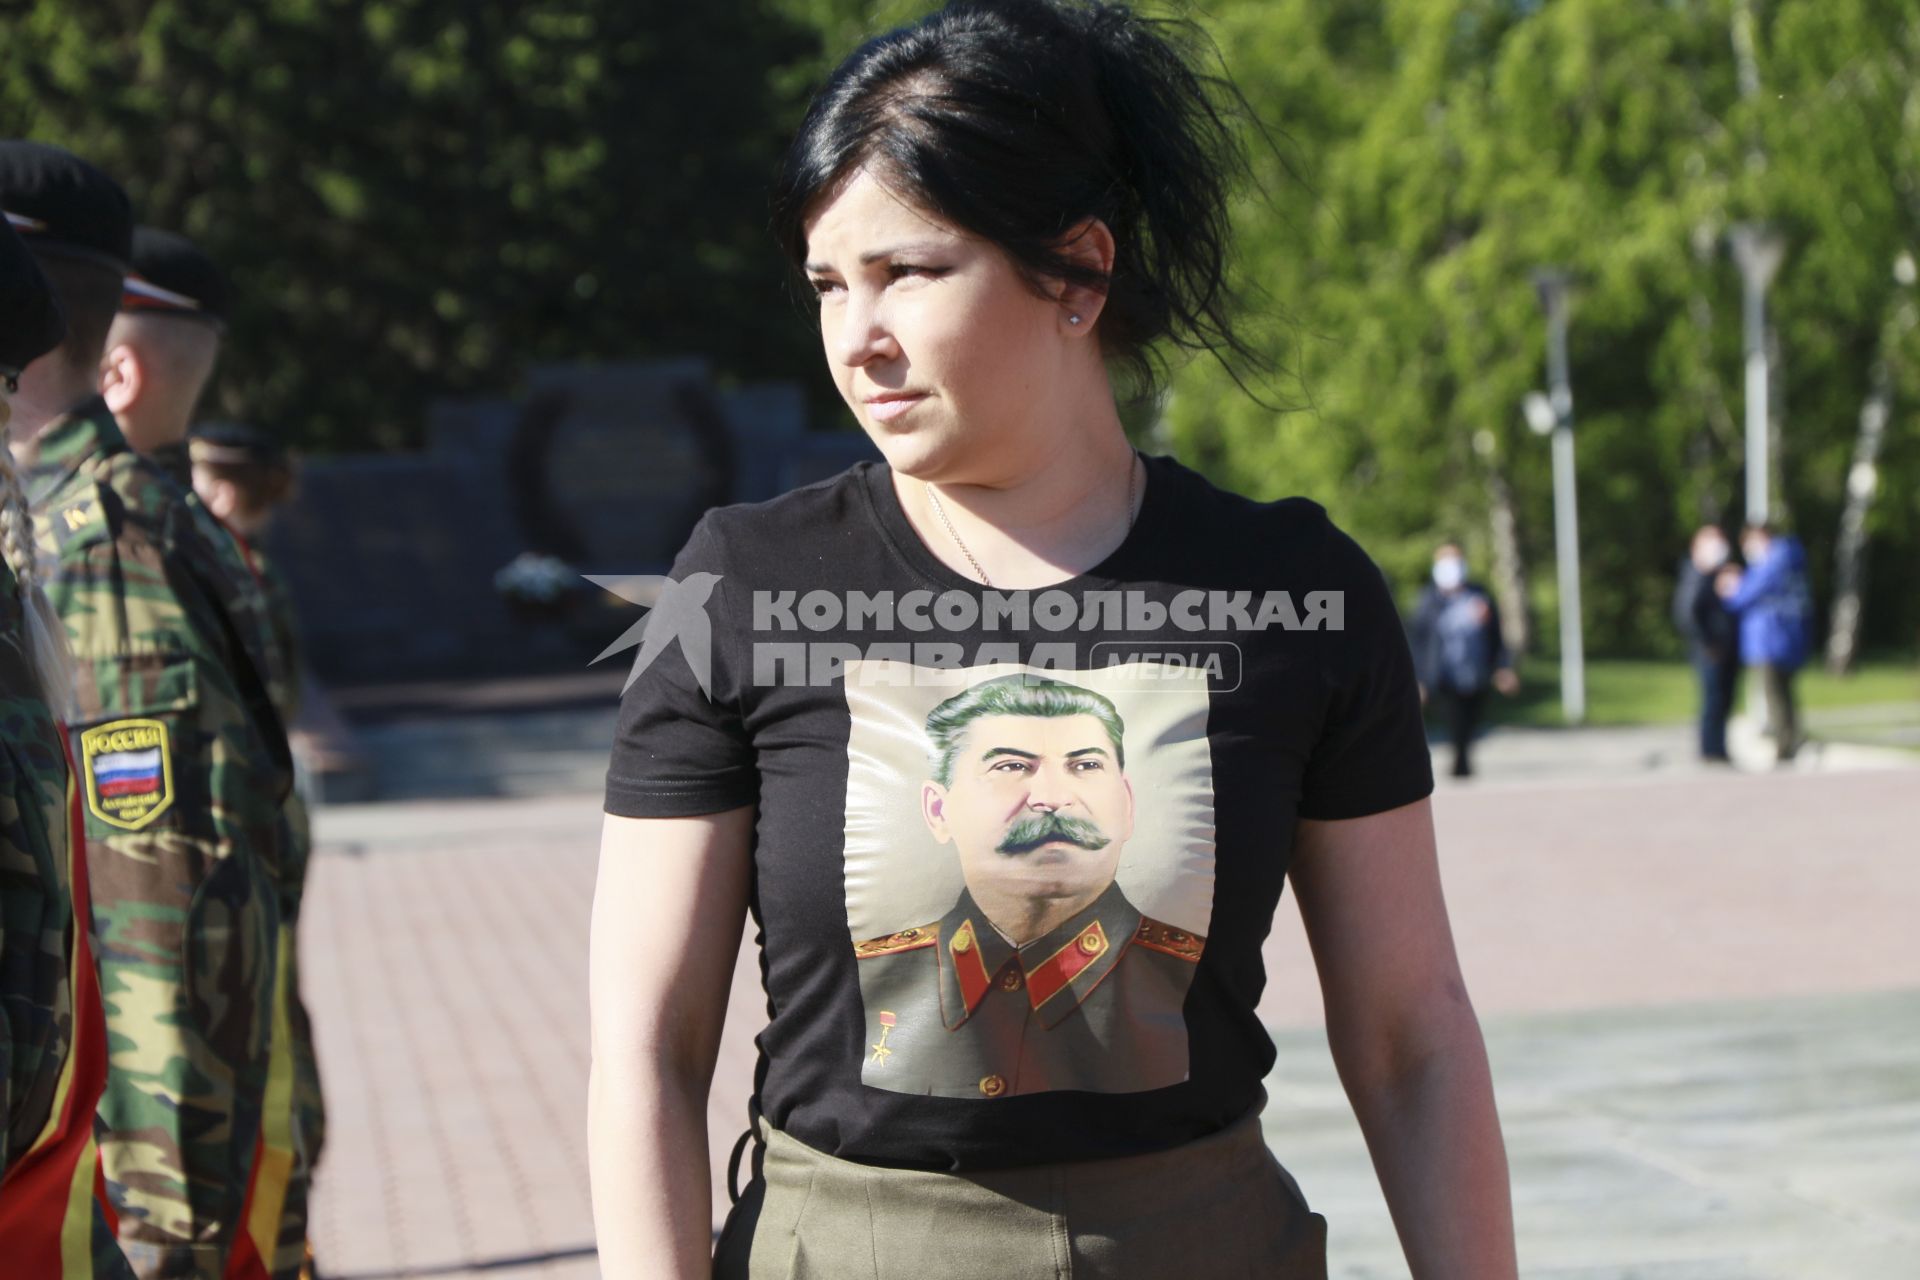 Барнаул. Девушка с портретом Сталина на футболке во время празднования Дня Победы.